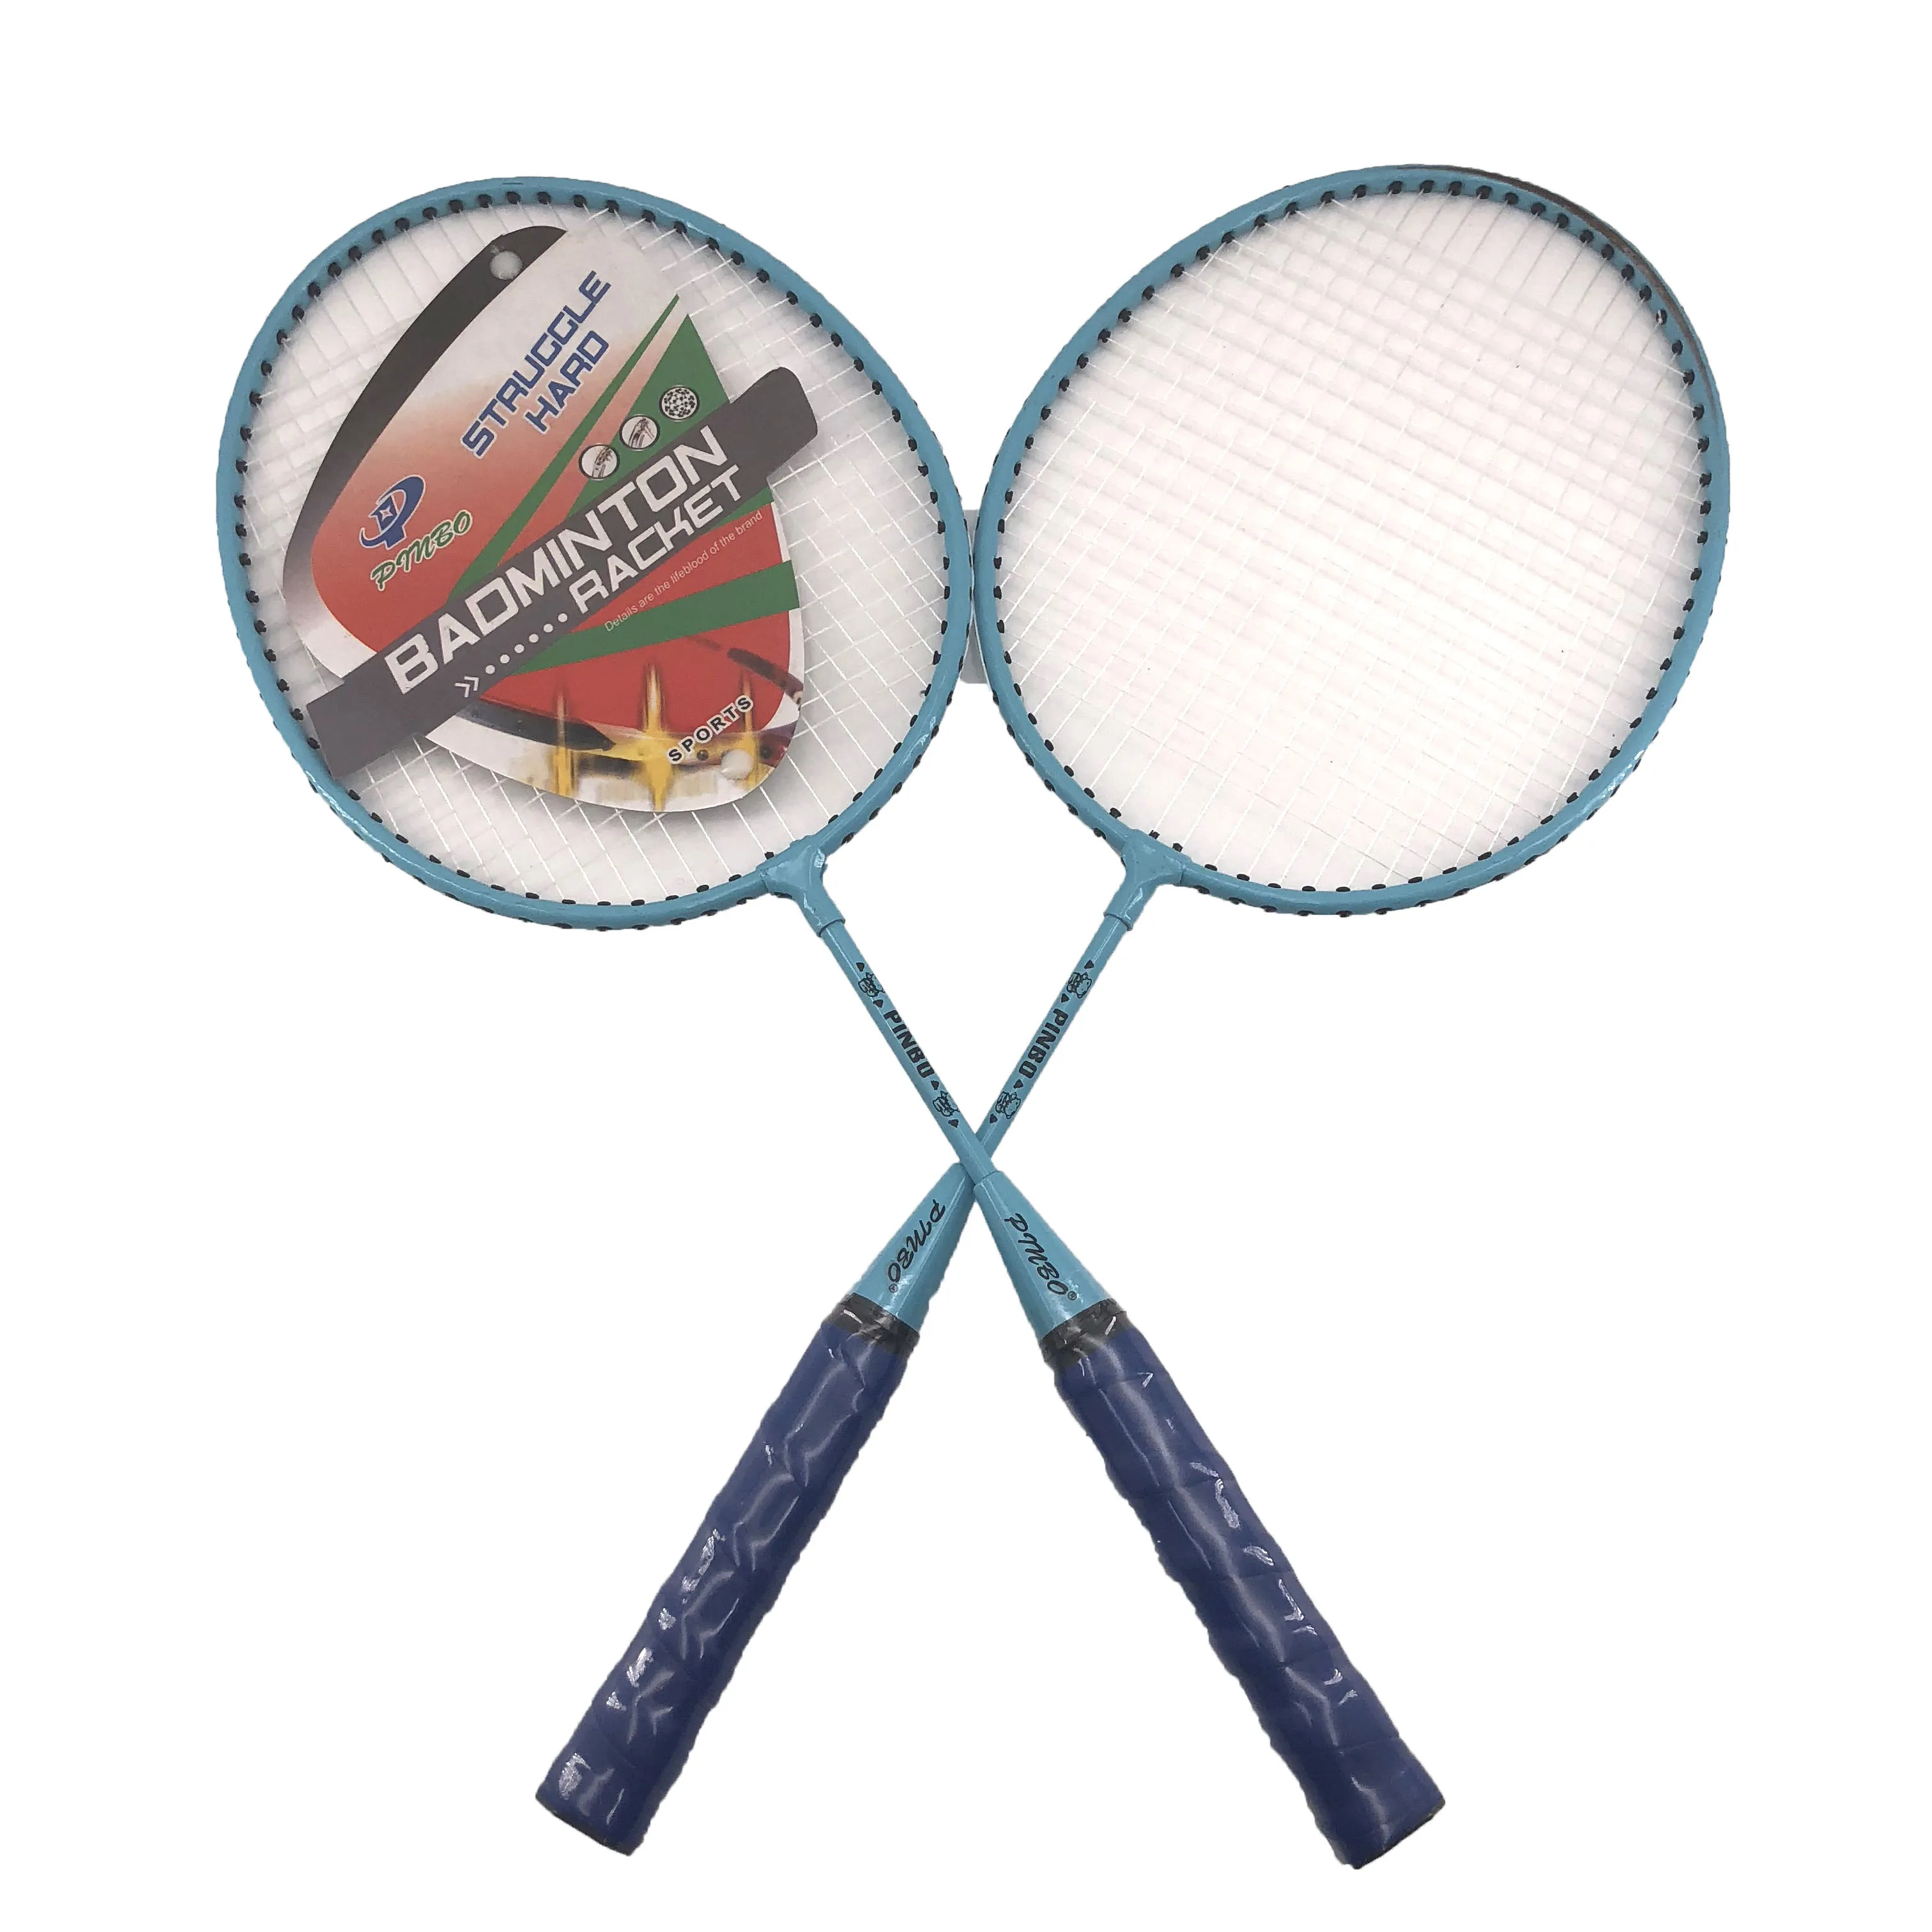 Aluminium Alloy Badminton Racket Dengan Kartun Tanda Untuk Anak Anak Buy Raket Bulutangkis